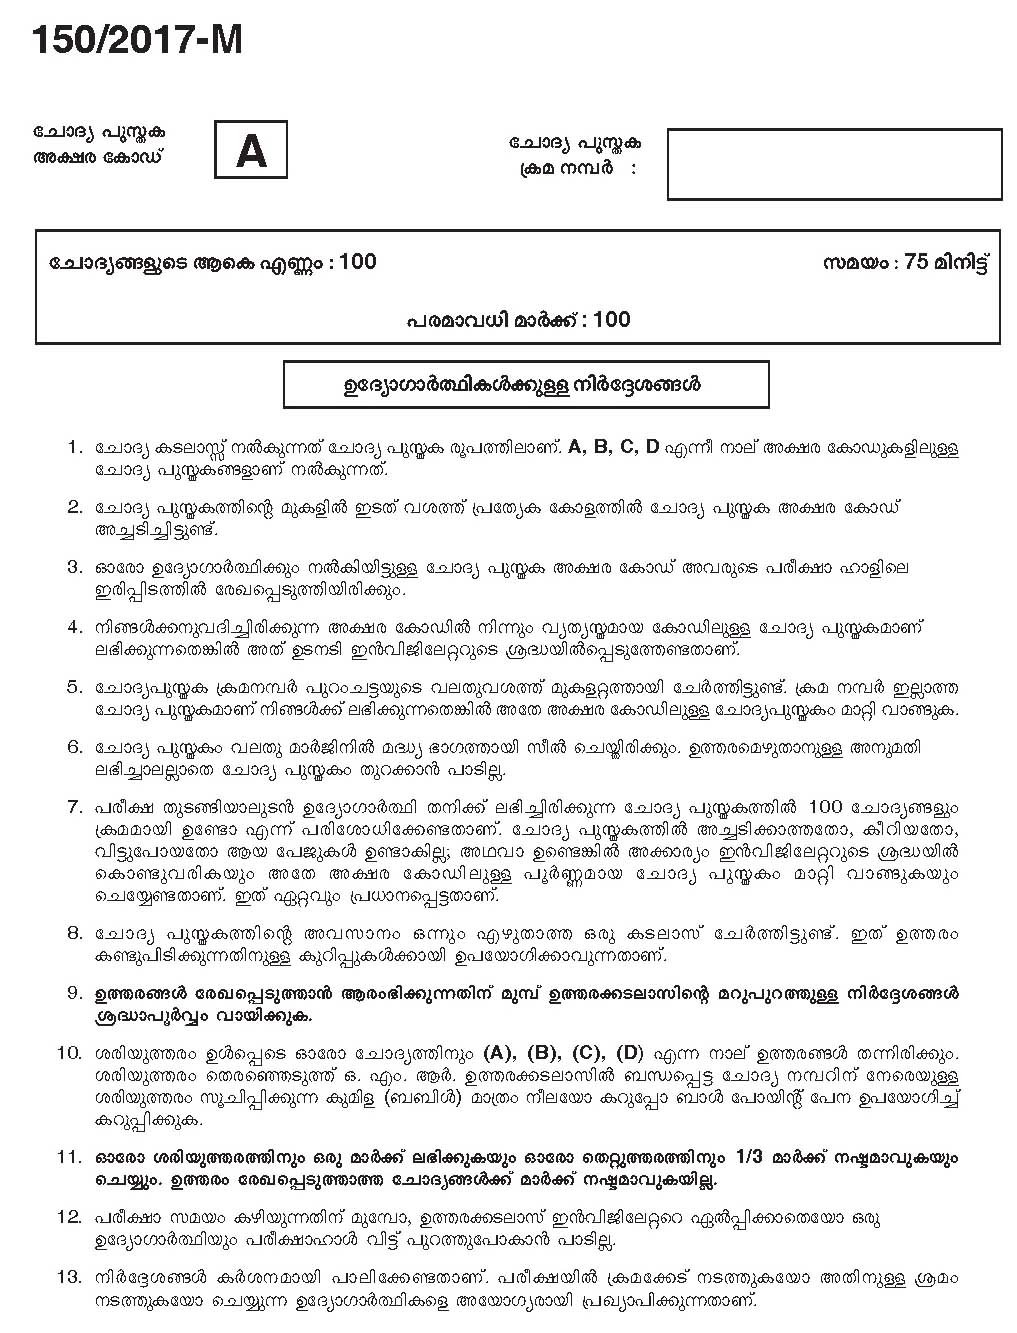 Kerala PSC Boat Deckman Exam Question Code 1502017 M 1